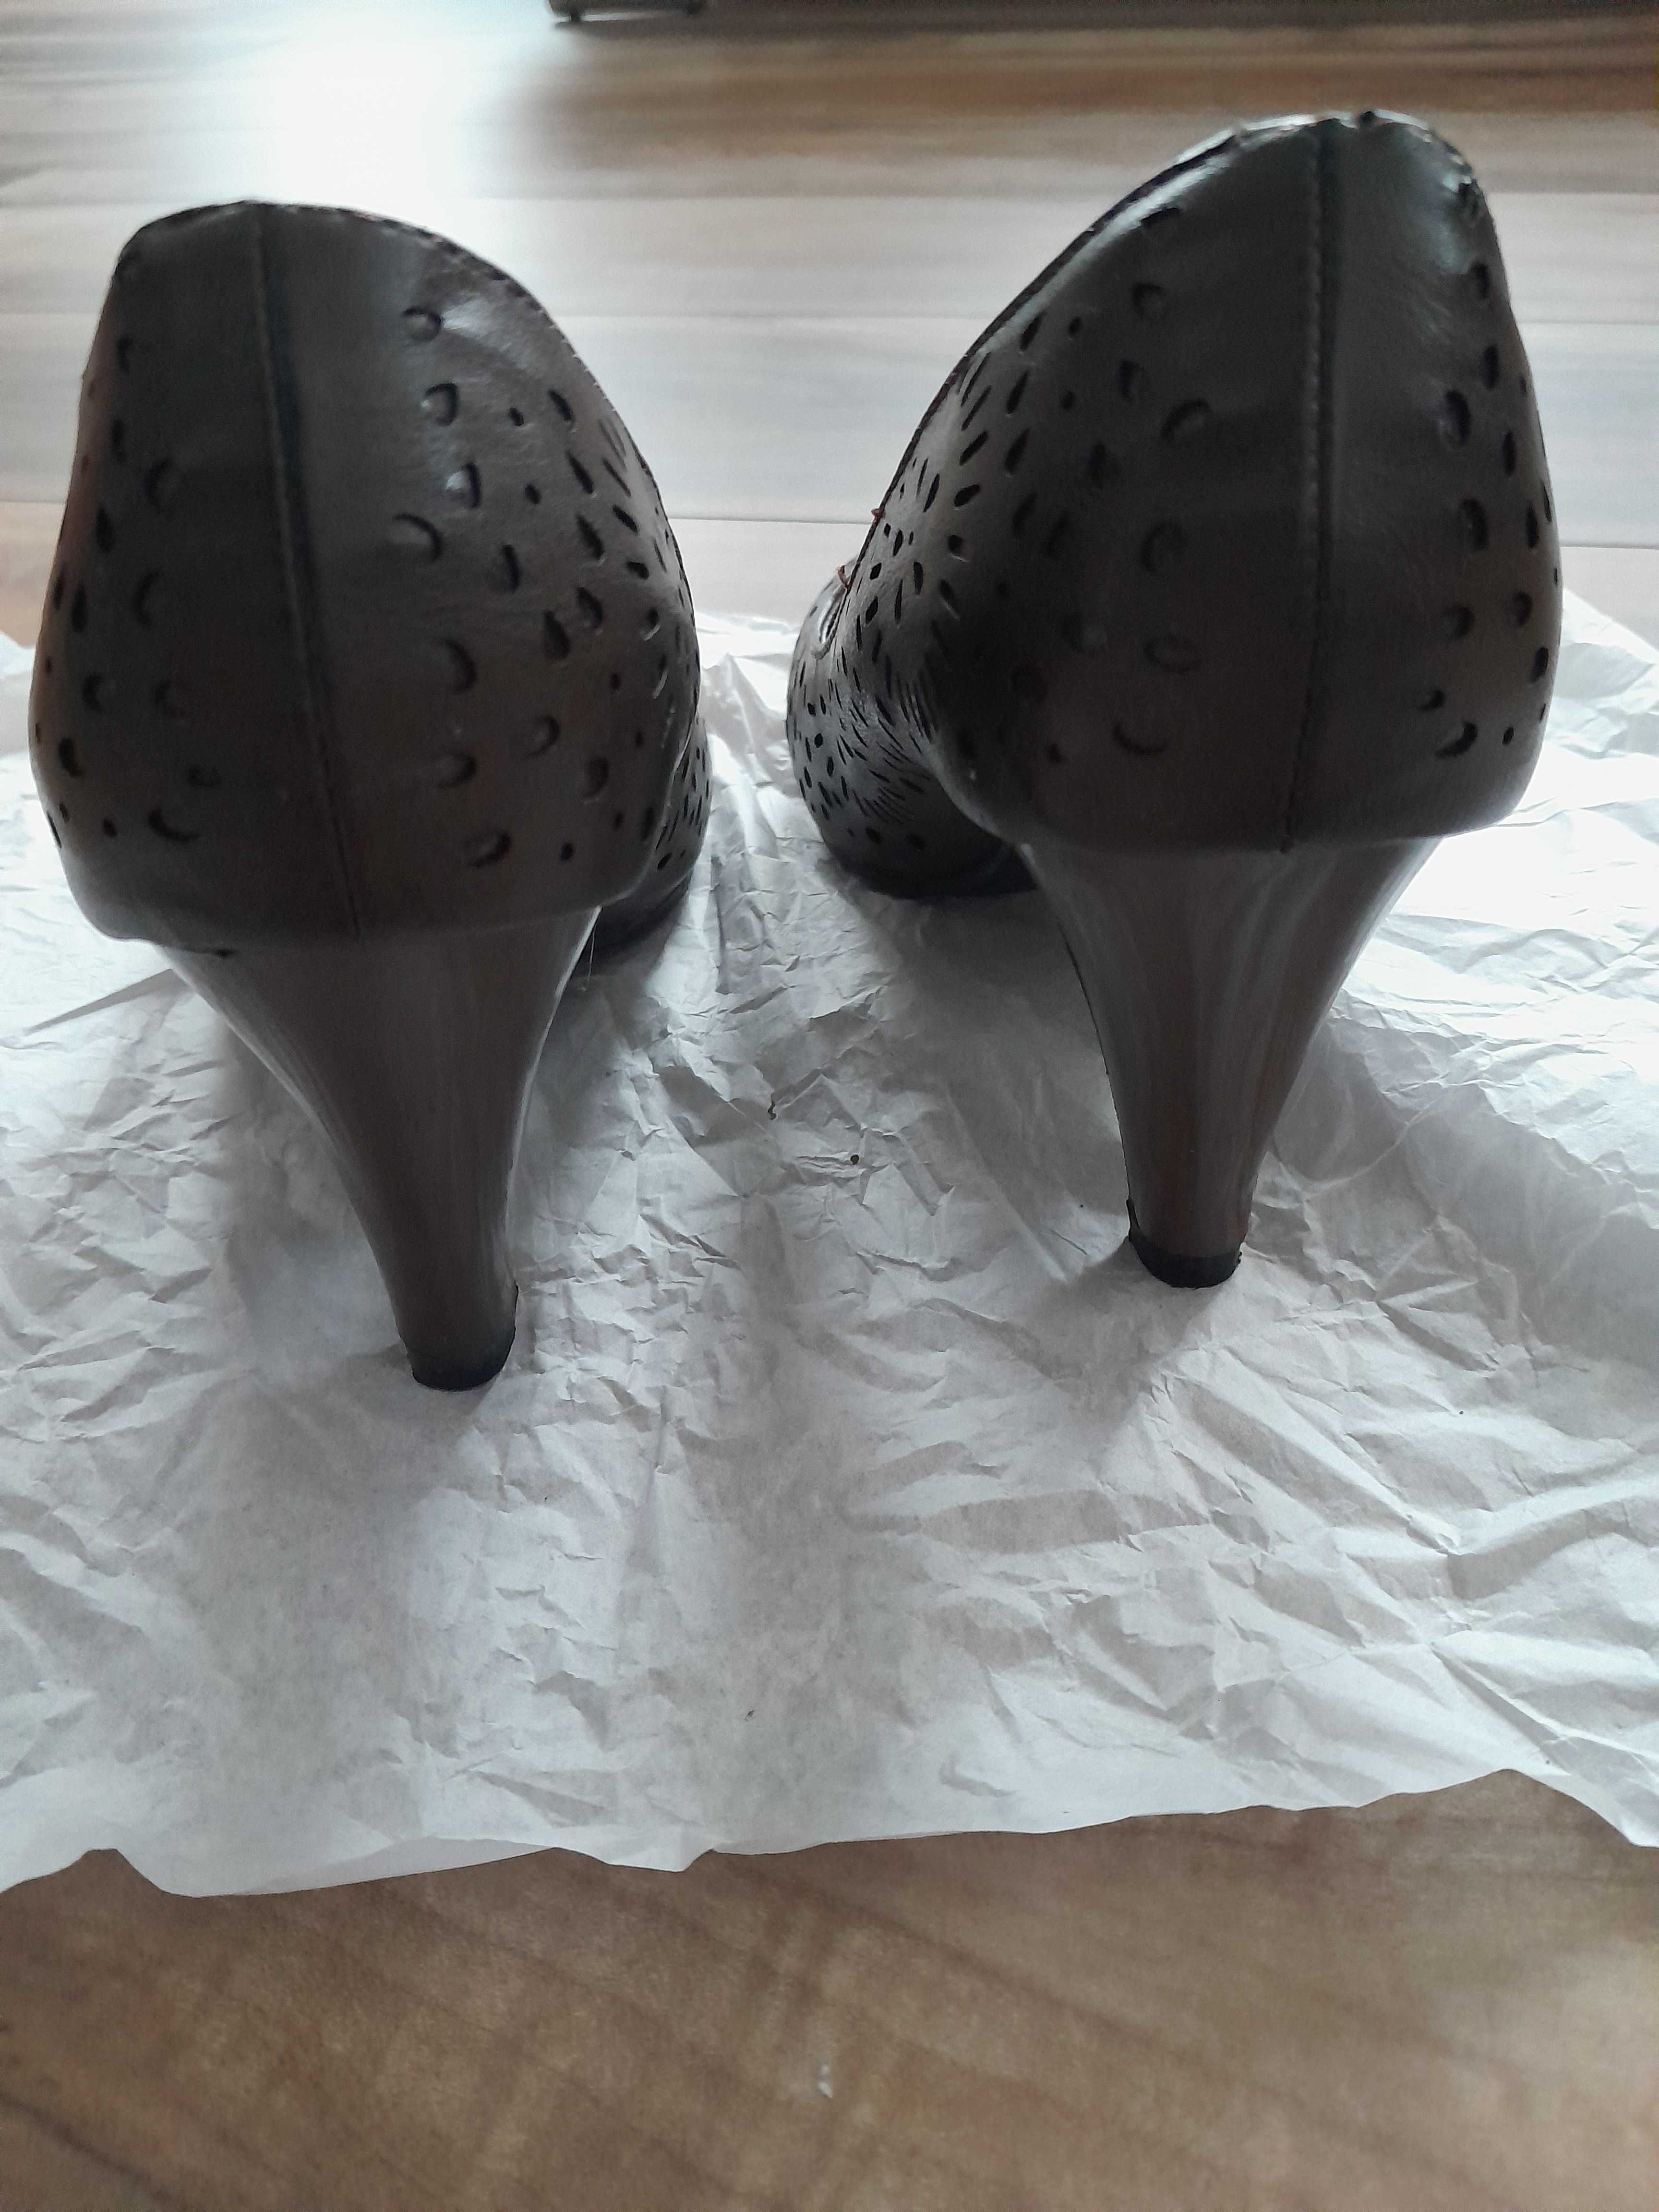 Дамски обувки в тъмнокафяв цвят, номер 36